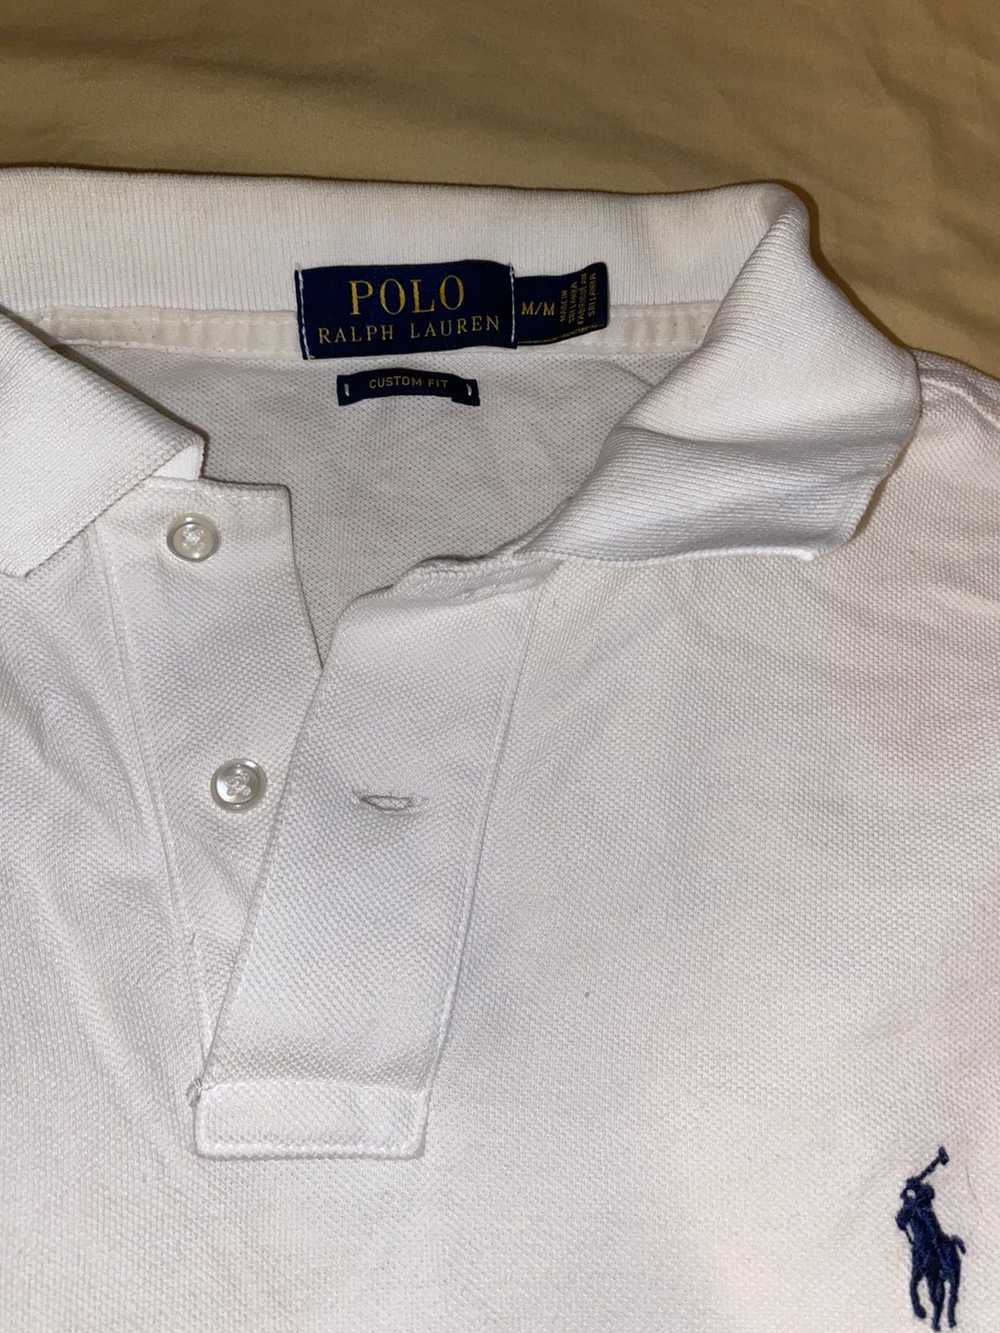 Polo Ralph Lauren White polo shirt button up - image 2